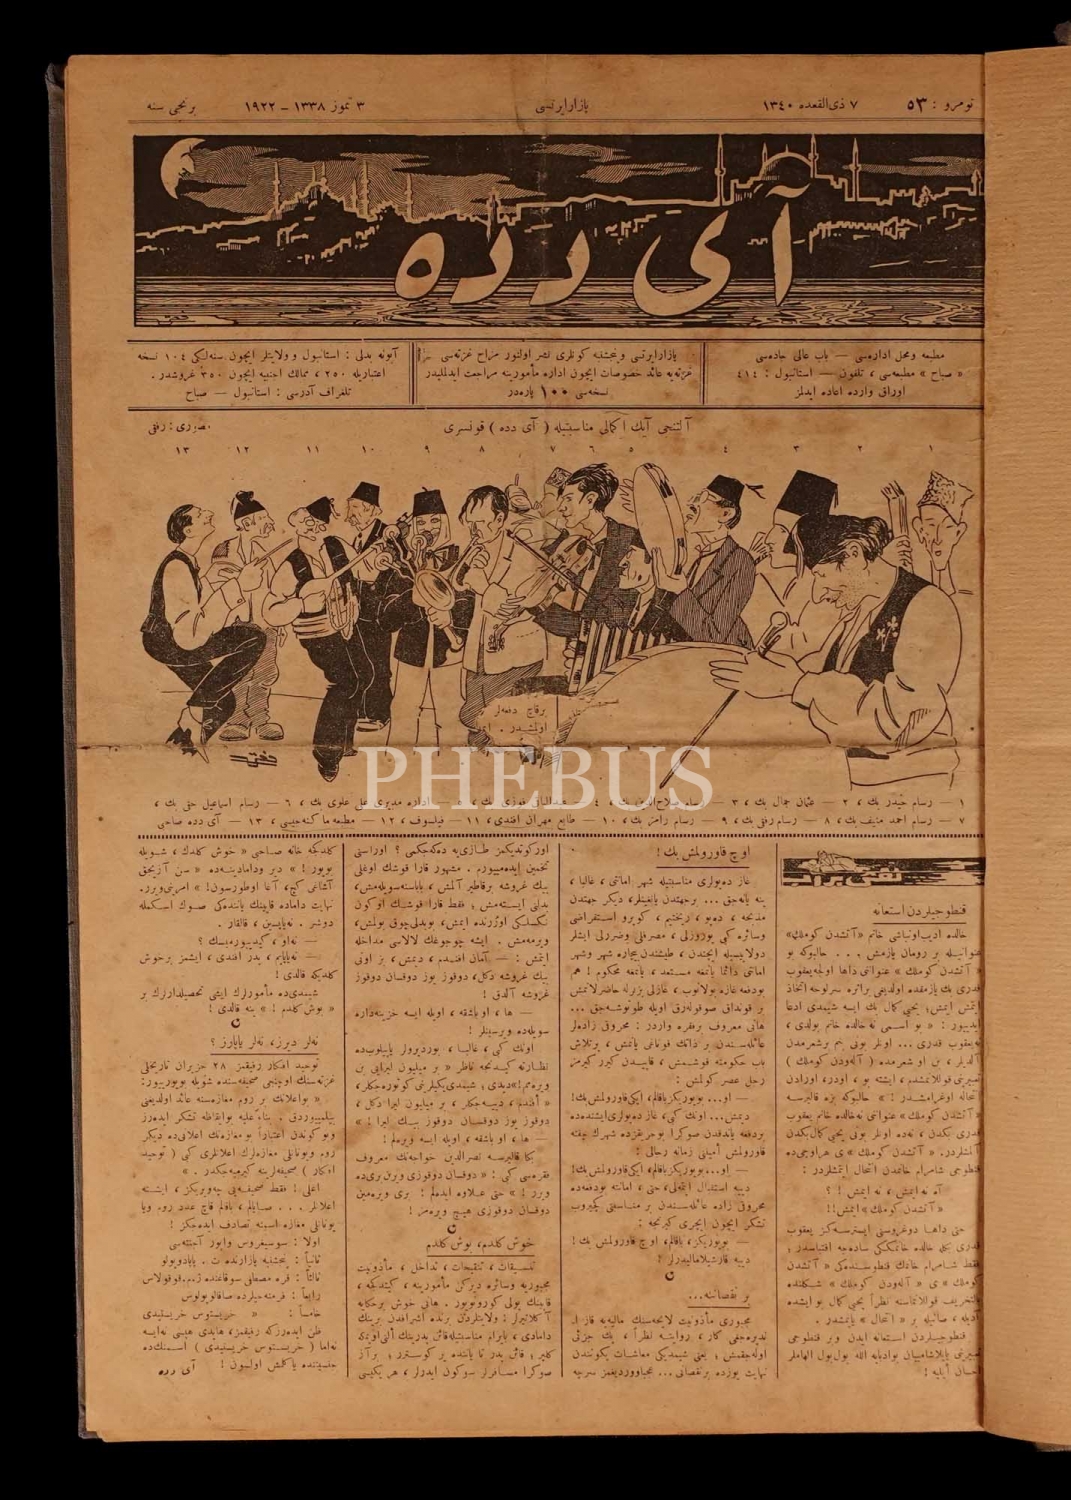 2 Ocak 1922 ile 9 Kasım 1922 tarihleri arasında yayımlanan AYDEDE dergisinin ilk 90 sayısı (takım), 29x41 cm...